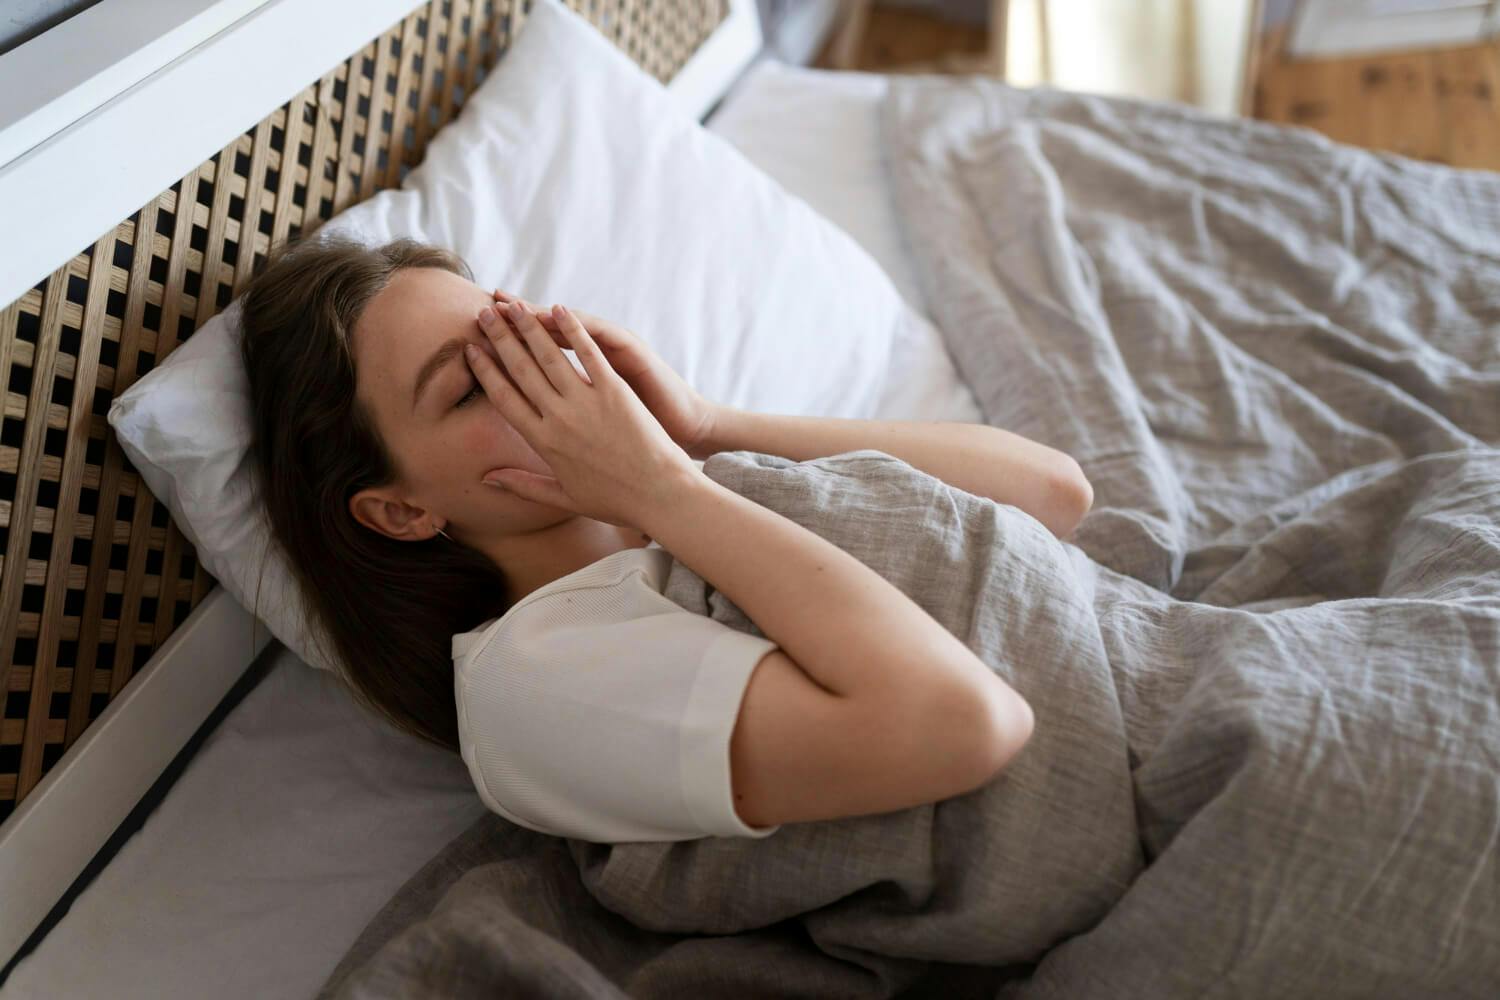 Mujer tumbada en la cama con expresión preocupada, reflejando los síntomas del insomnio y la ansiedad que afectan su capacidad para dormir bien.